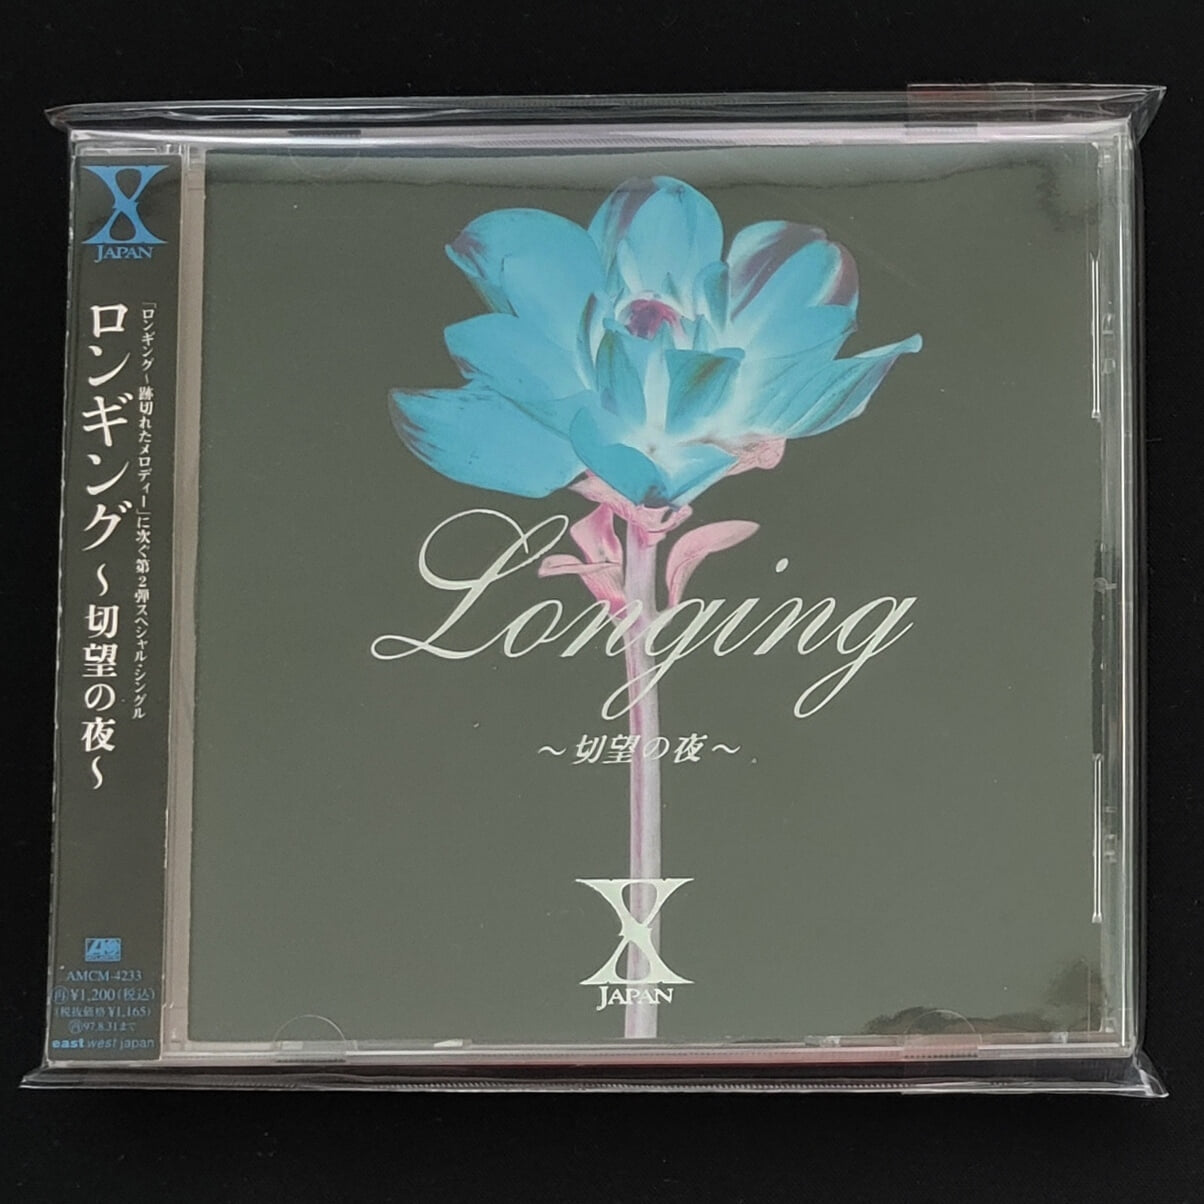 X JAPAN (엑스 재팬) - Longing ~切望の夜~ (절망의 밤)